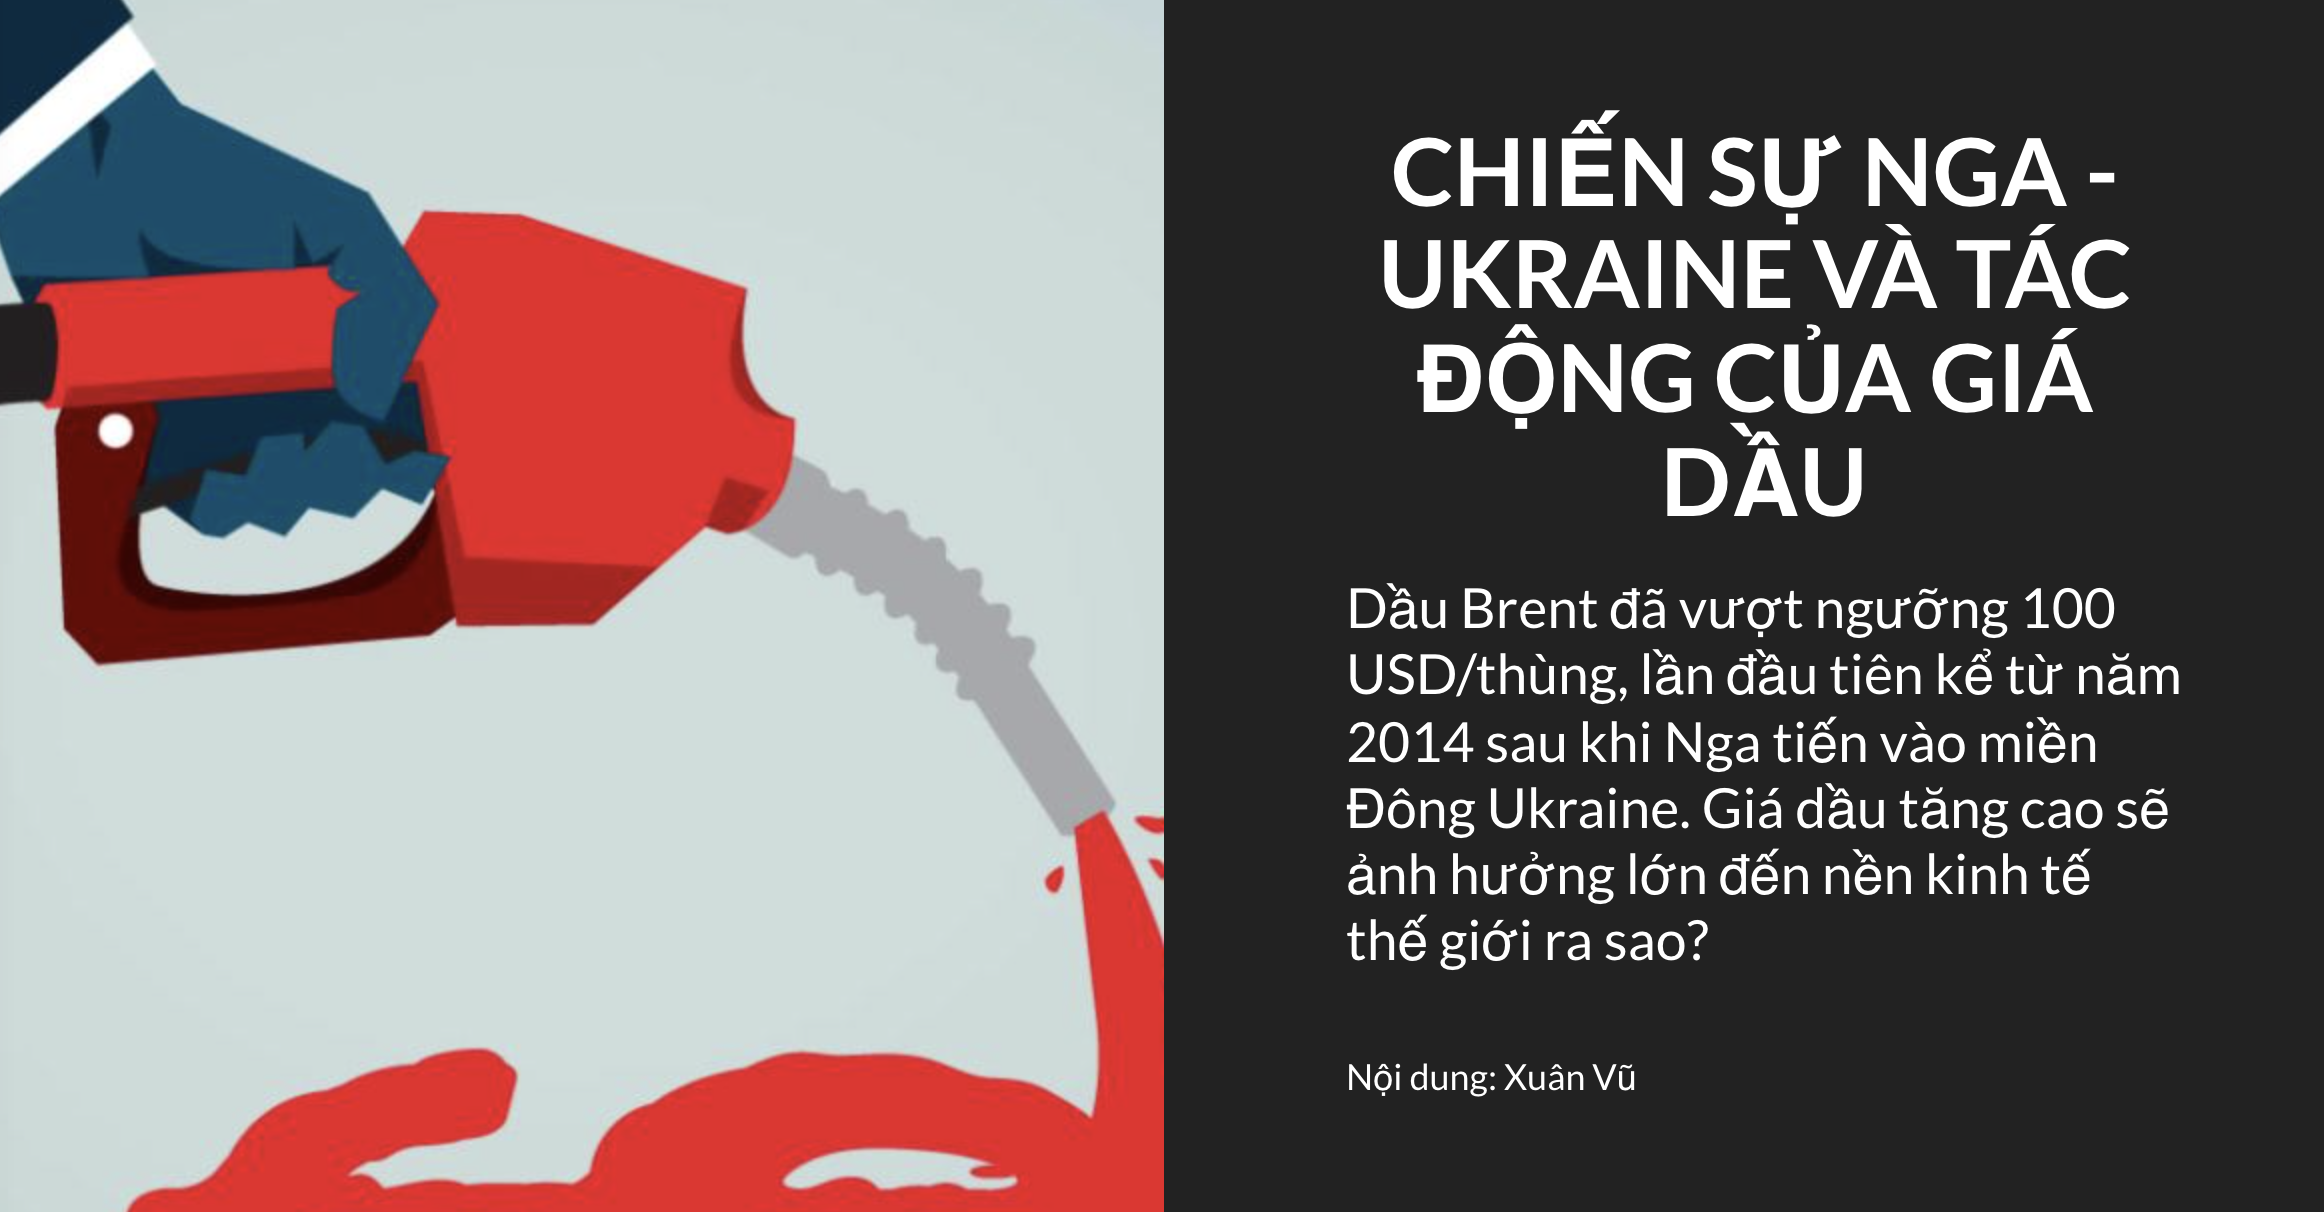 Chiến sự Nga - Ukraine và tác động của giá dầu